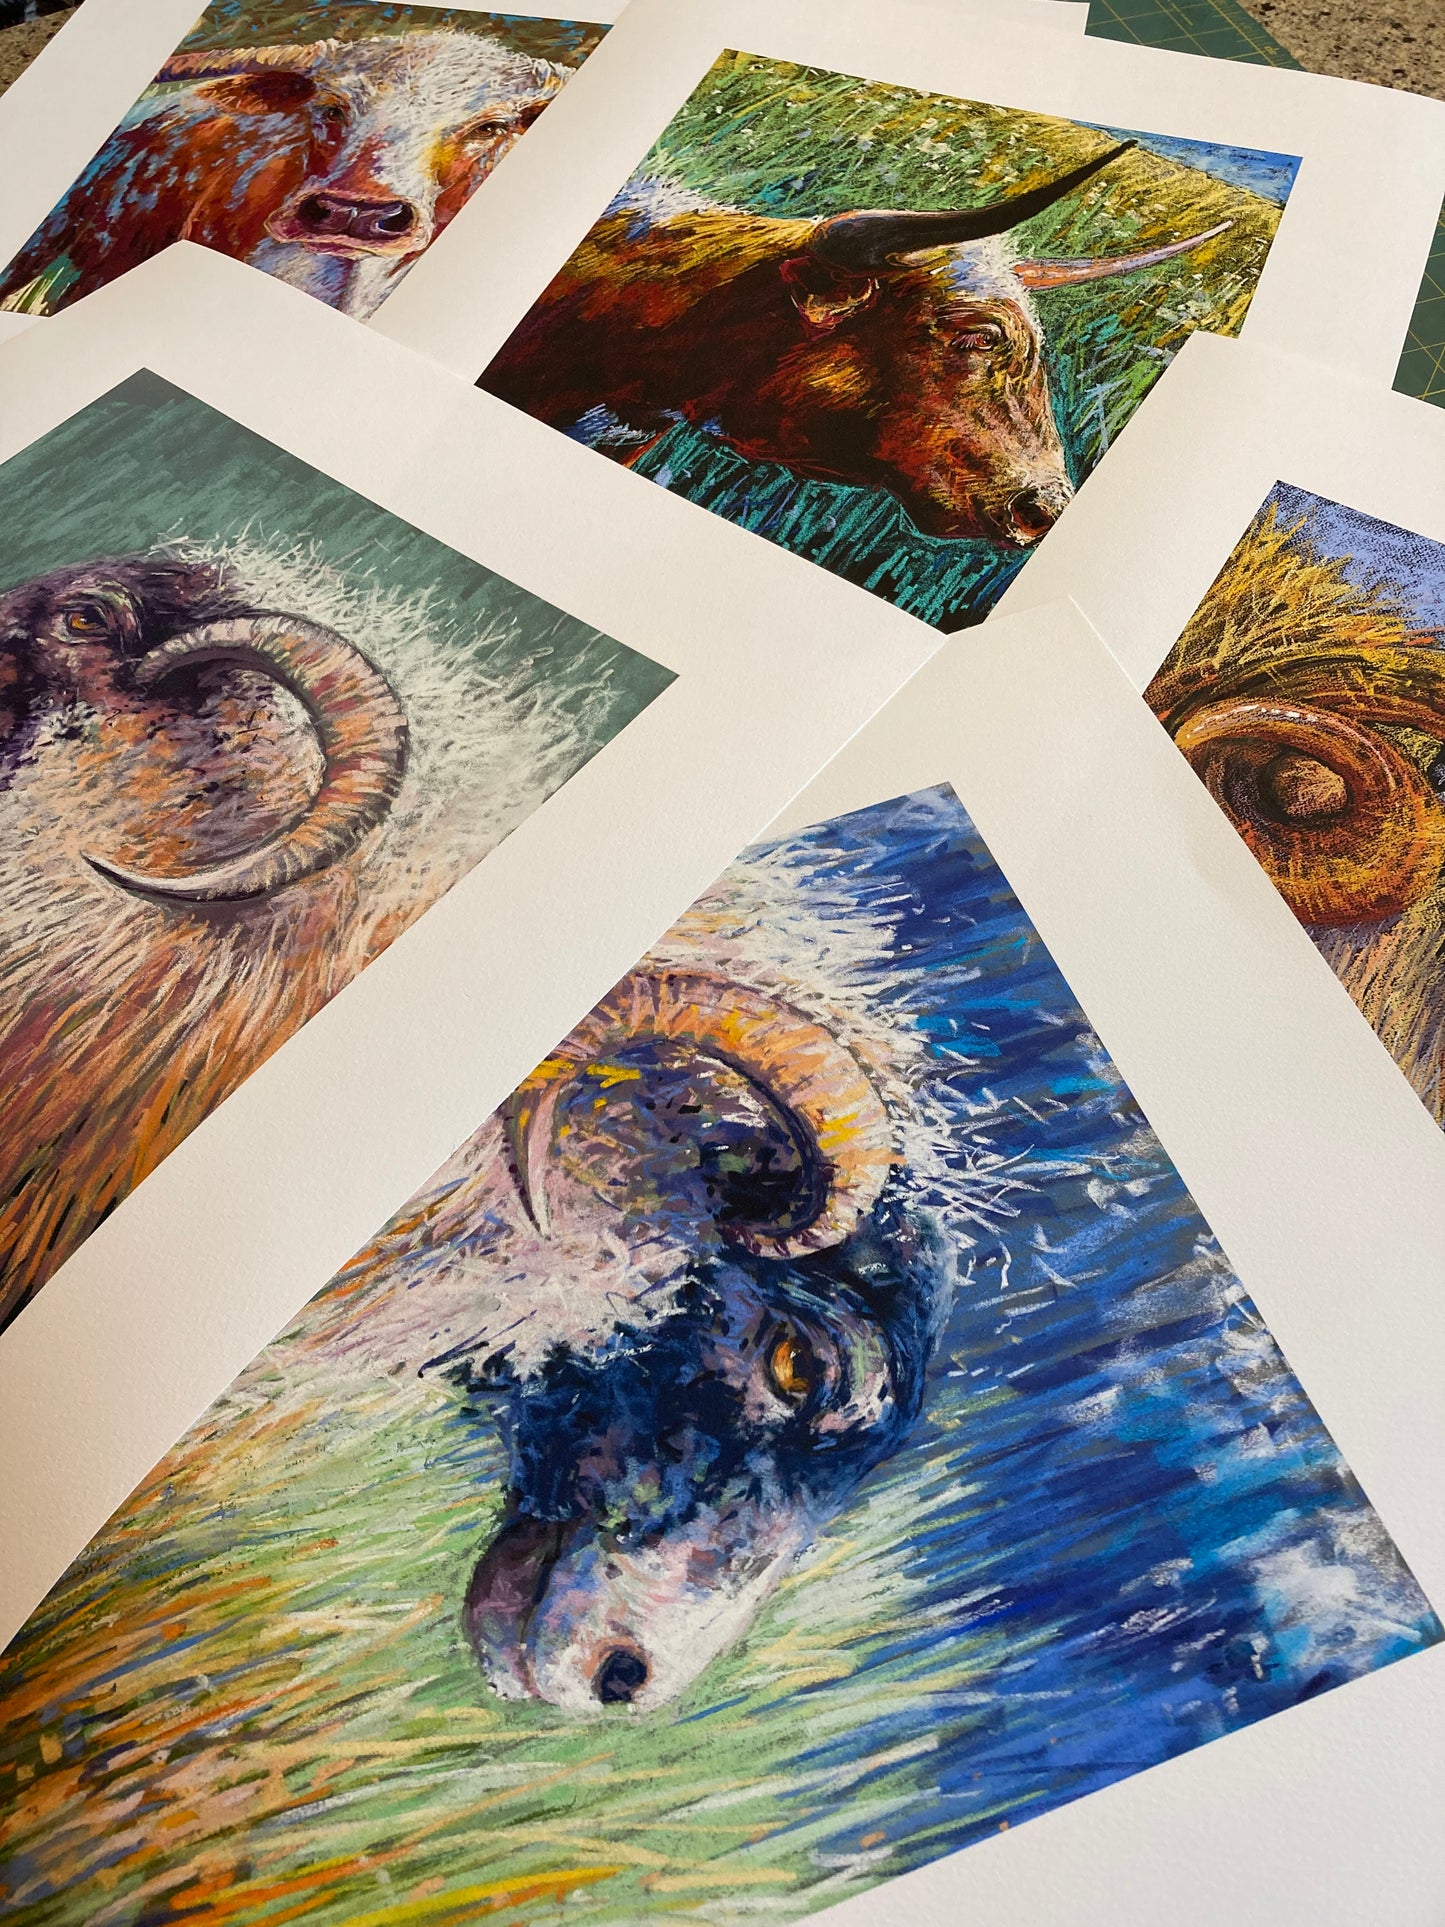 Selection of animal prints